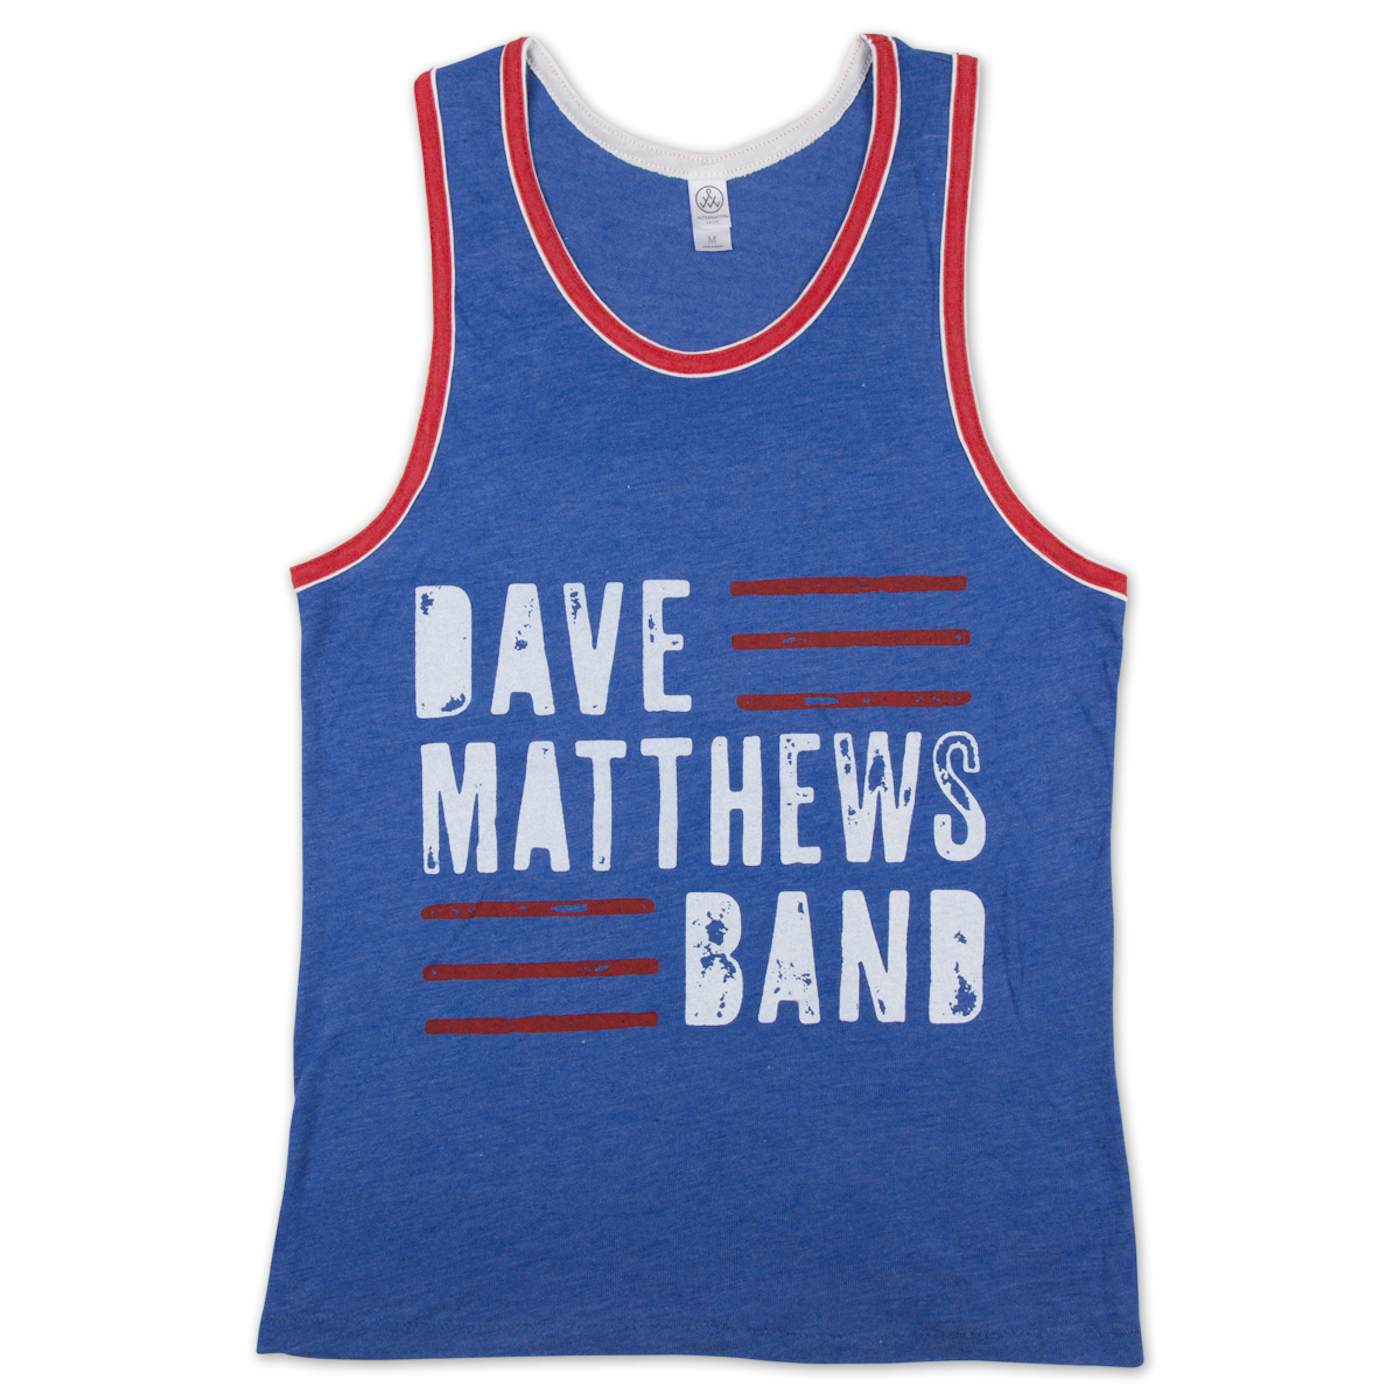 Dave Matthews Band Men's Tank